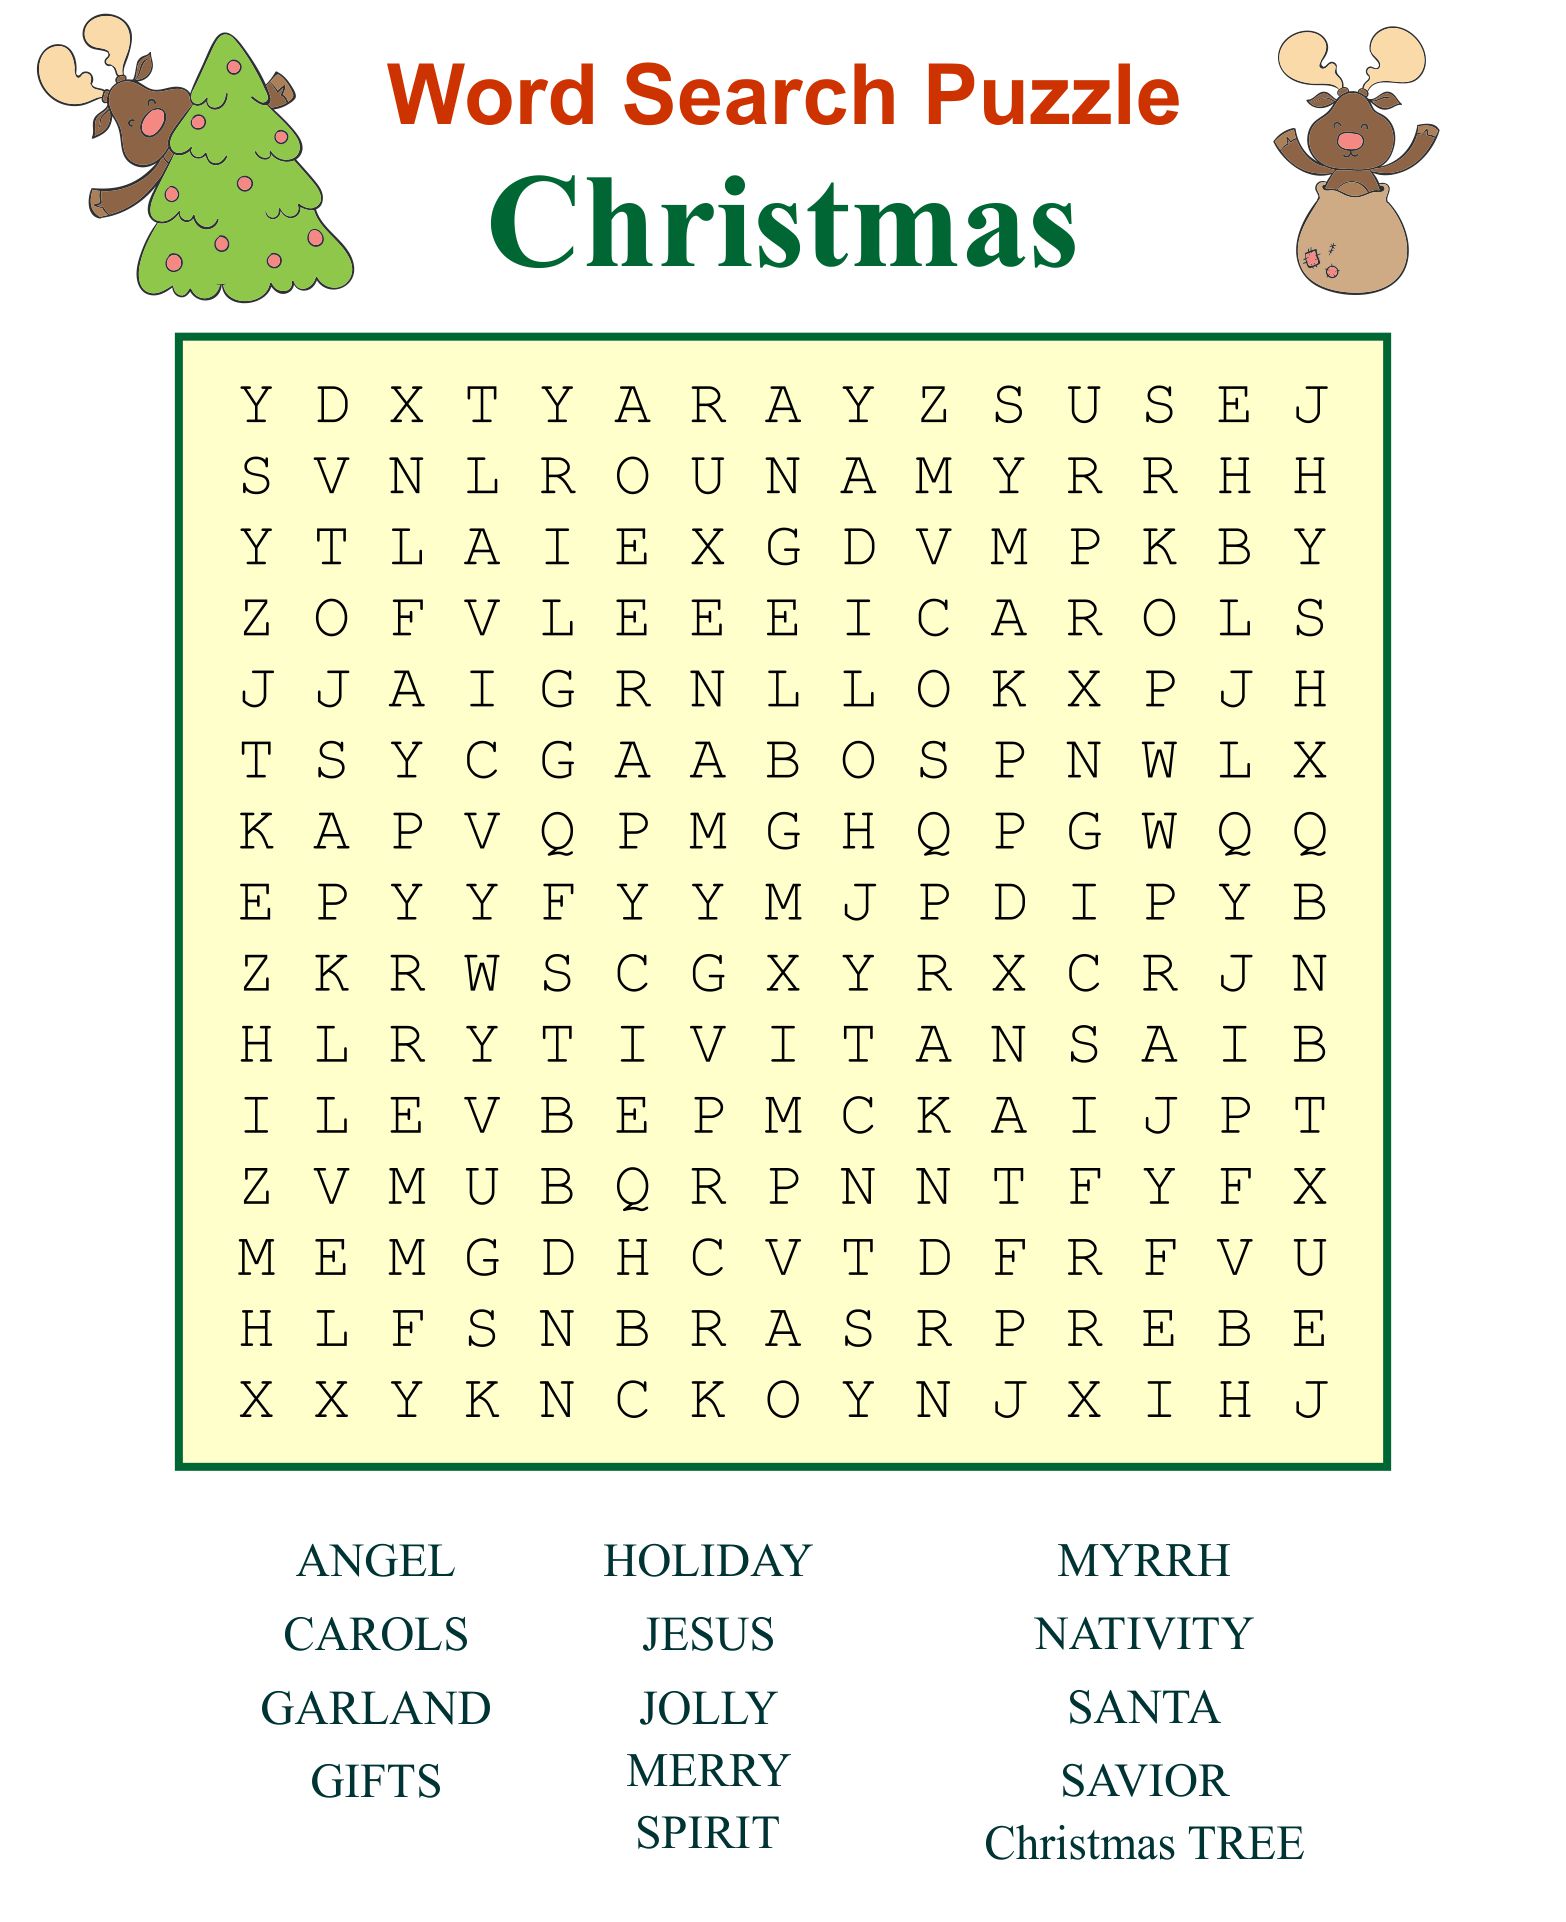 Christmas Word Search Printable